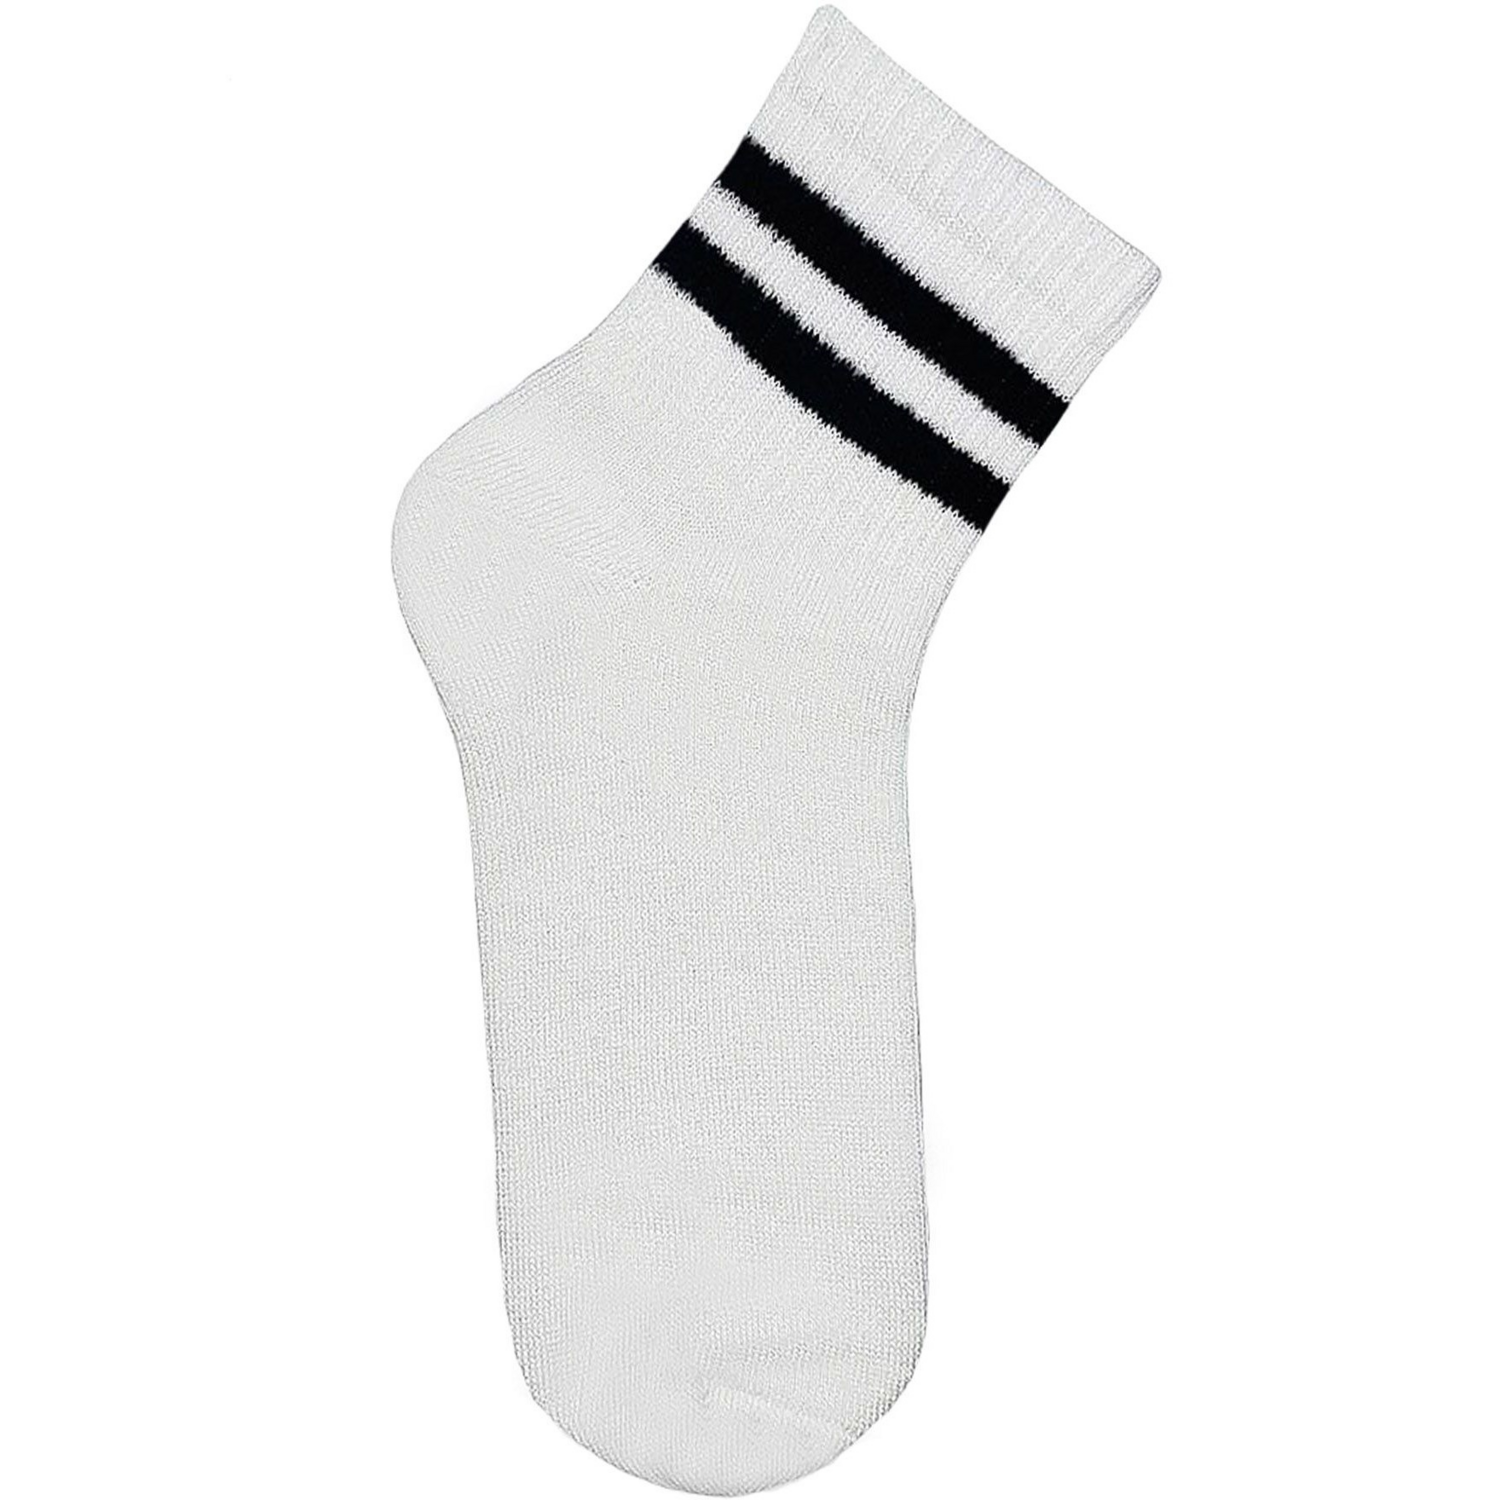 Шкарпетки дитячі Premier Socks 18-20 1 пара білі з чорними смужками (4820163320076)фото